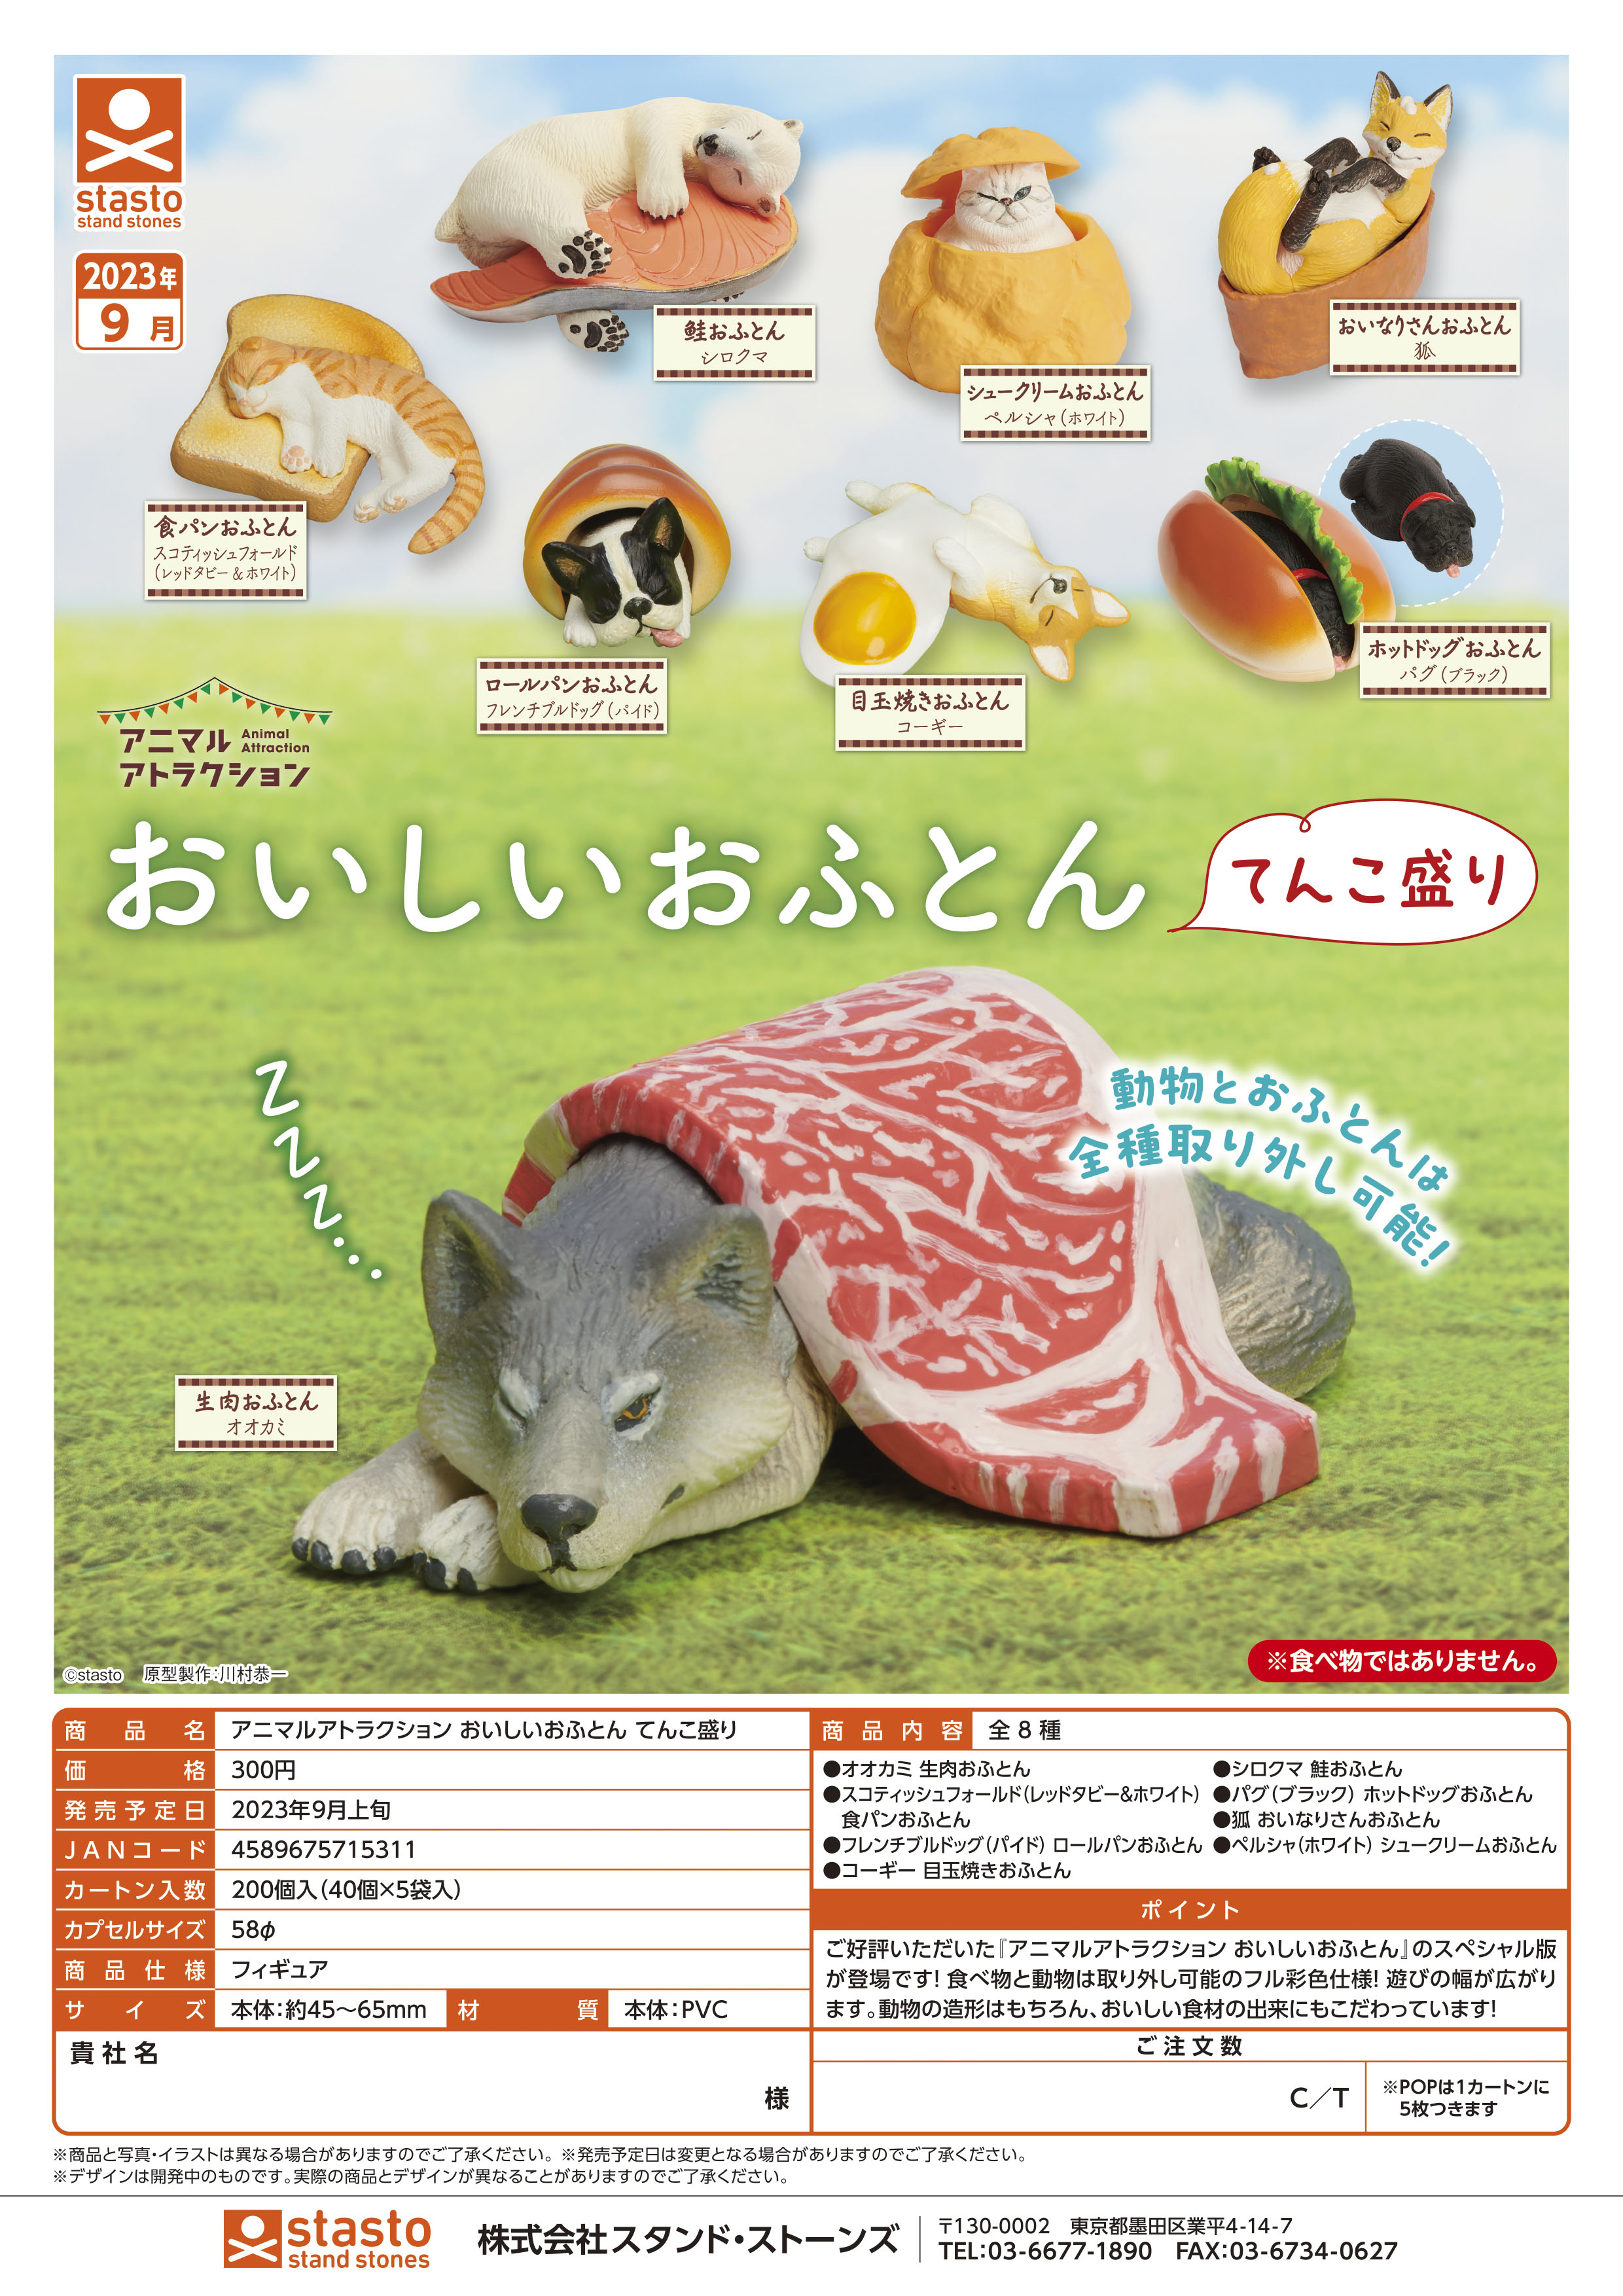 虾壳社 现货日本STASTO扭蛋 美味的食物被子和动物们 睡觉 午休狼